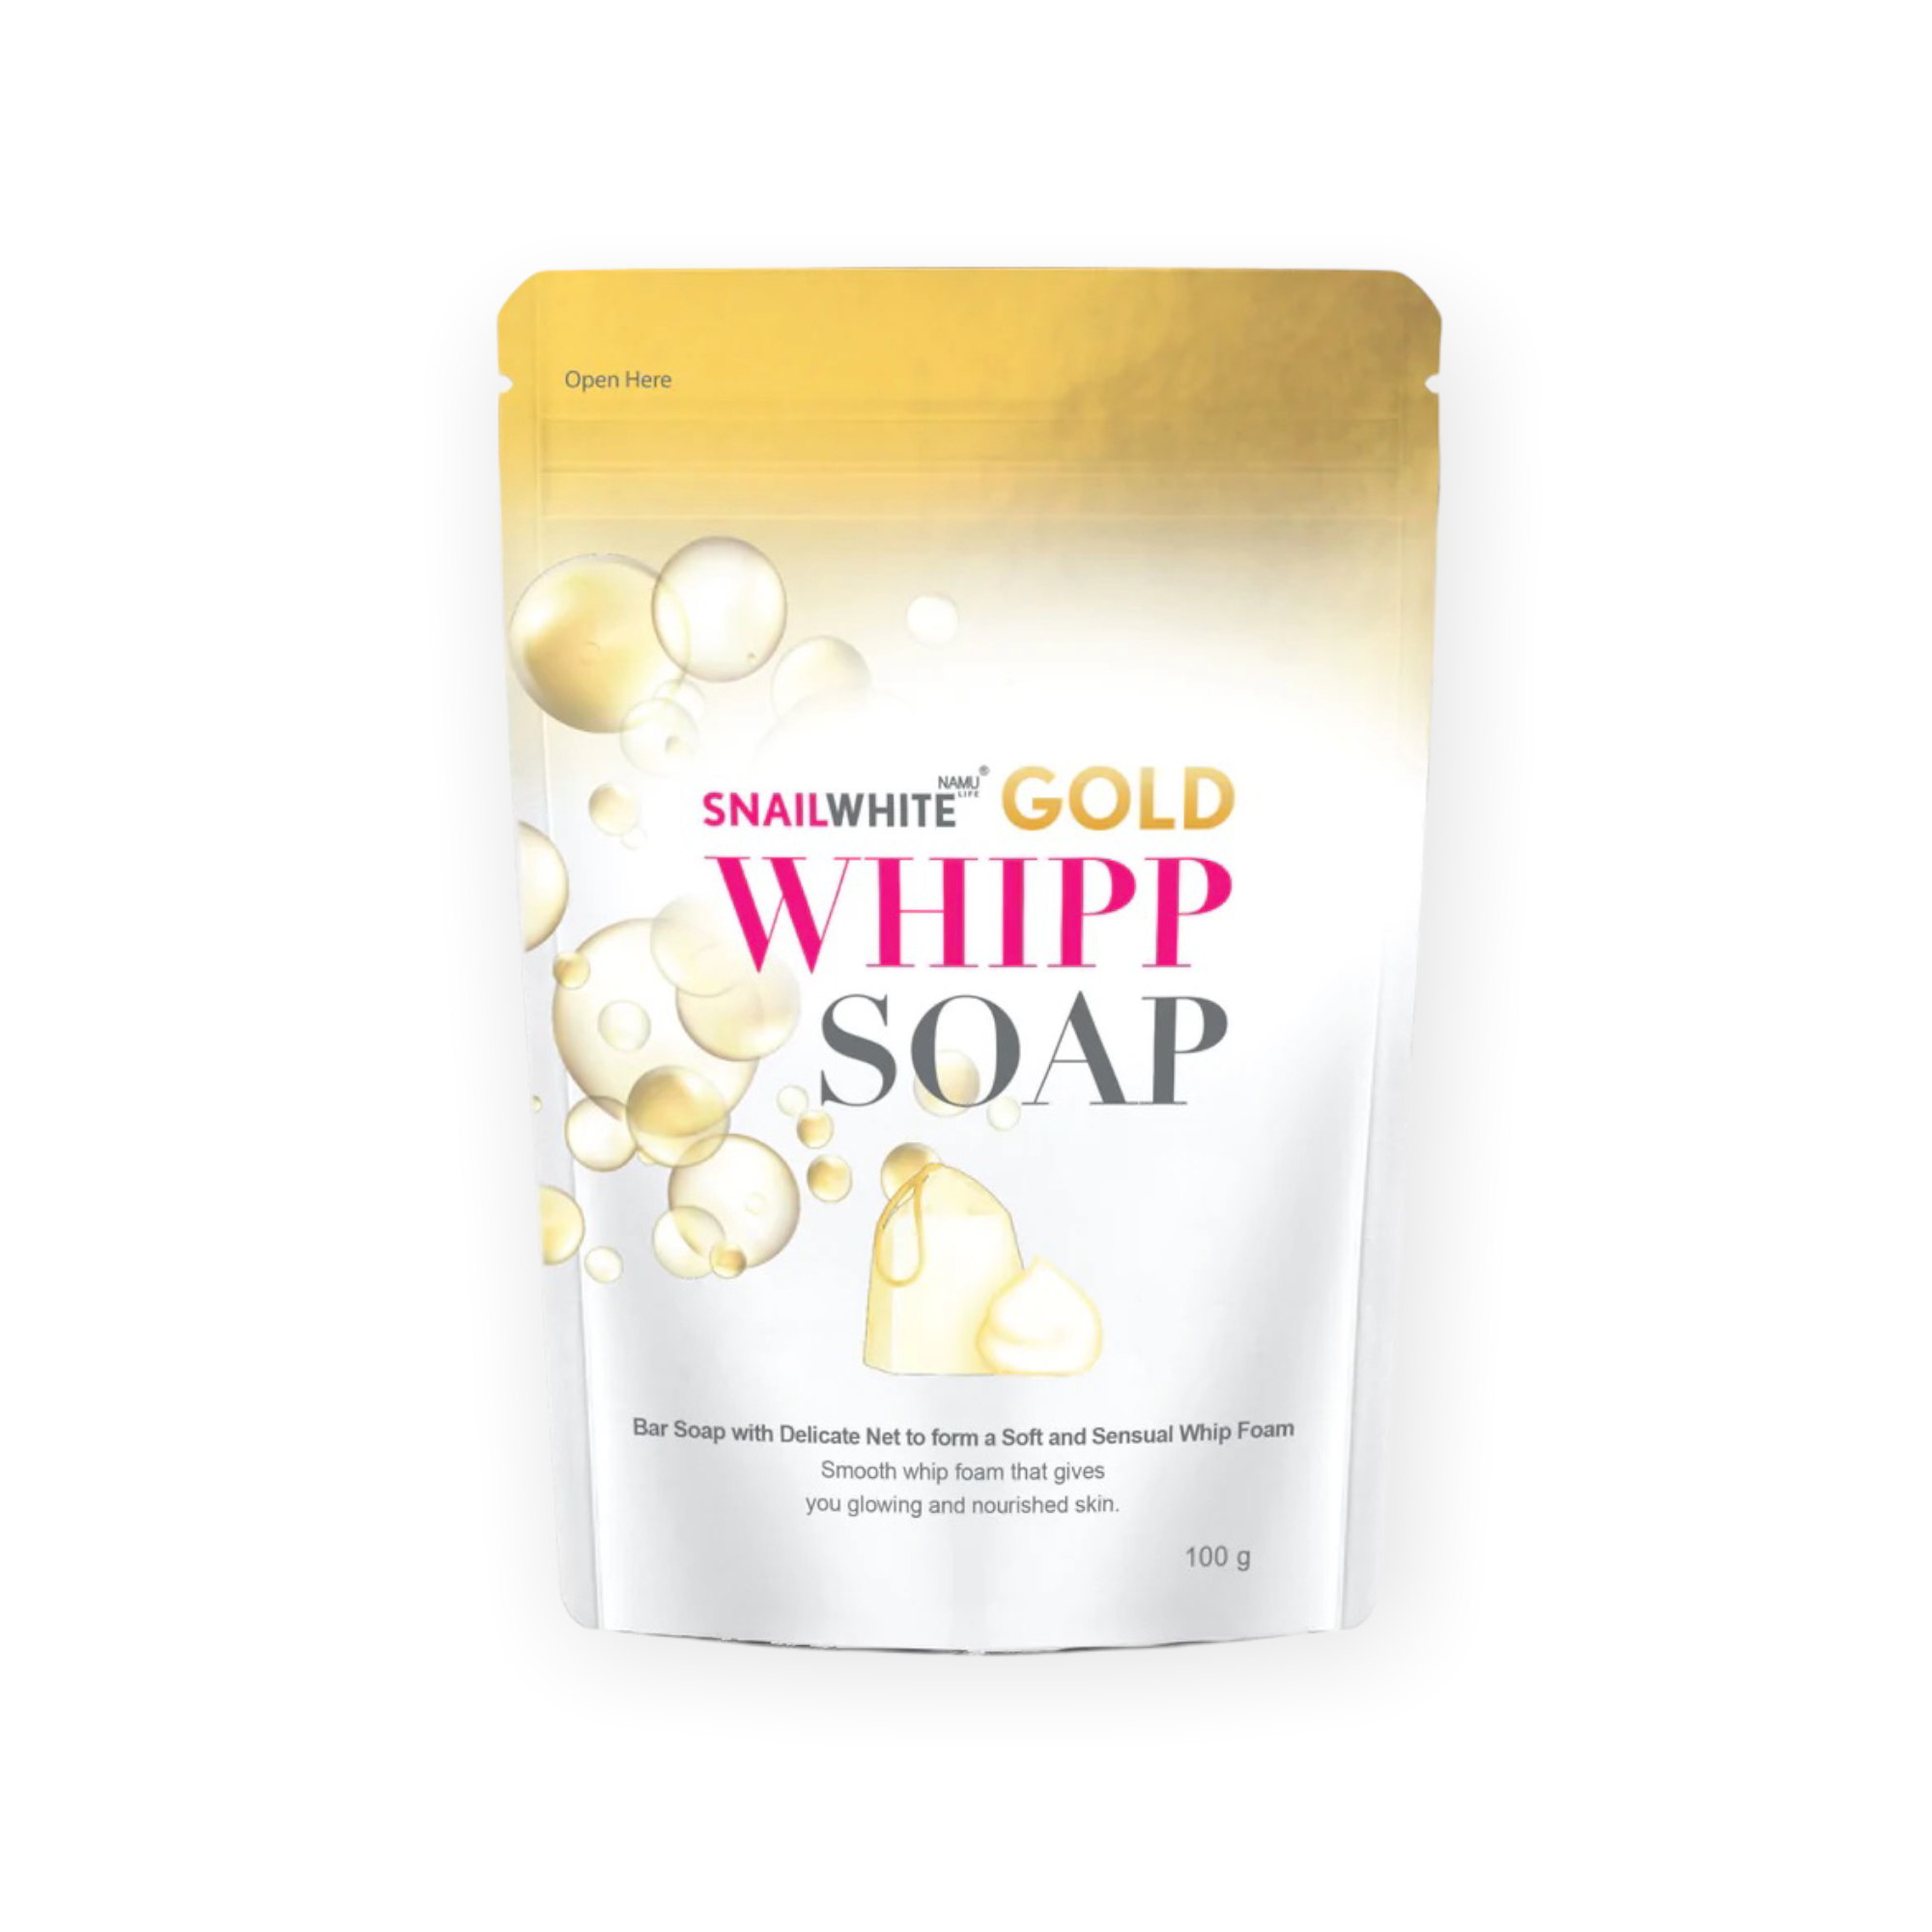 SnailWhite GOLD Whipp Soap 100g